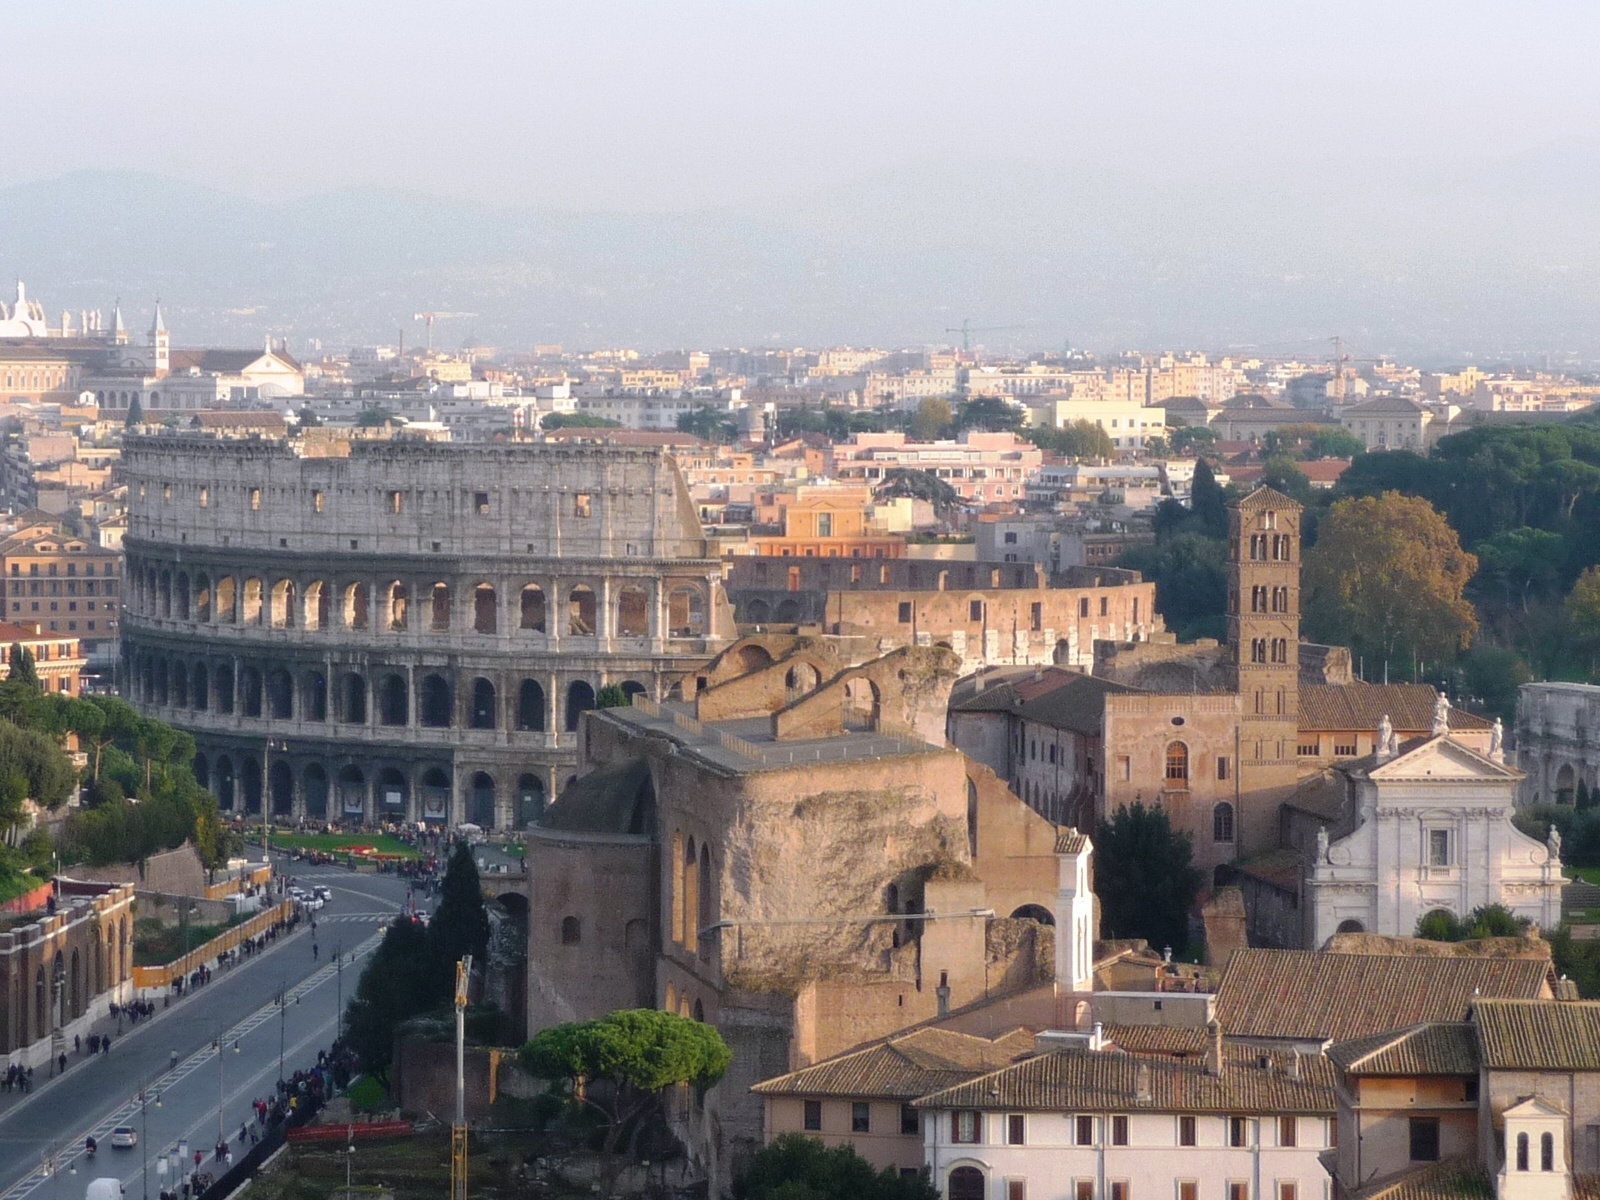 Róma - Colosseo fentről